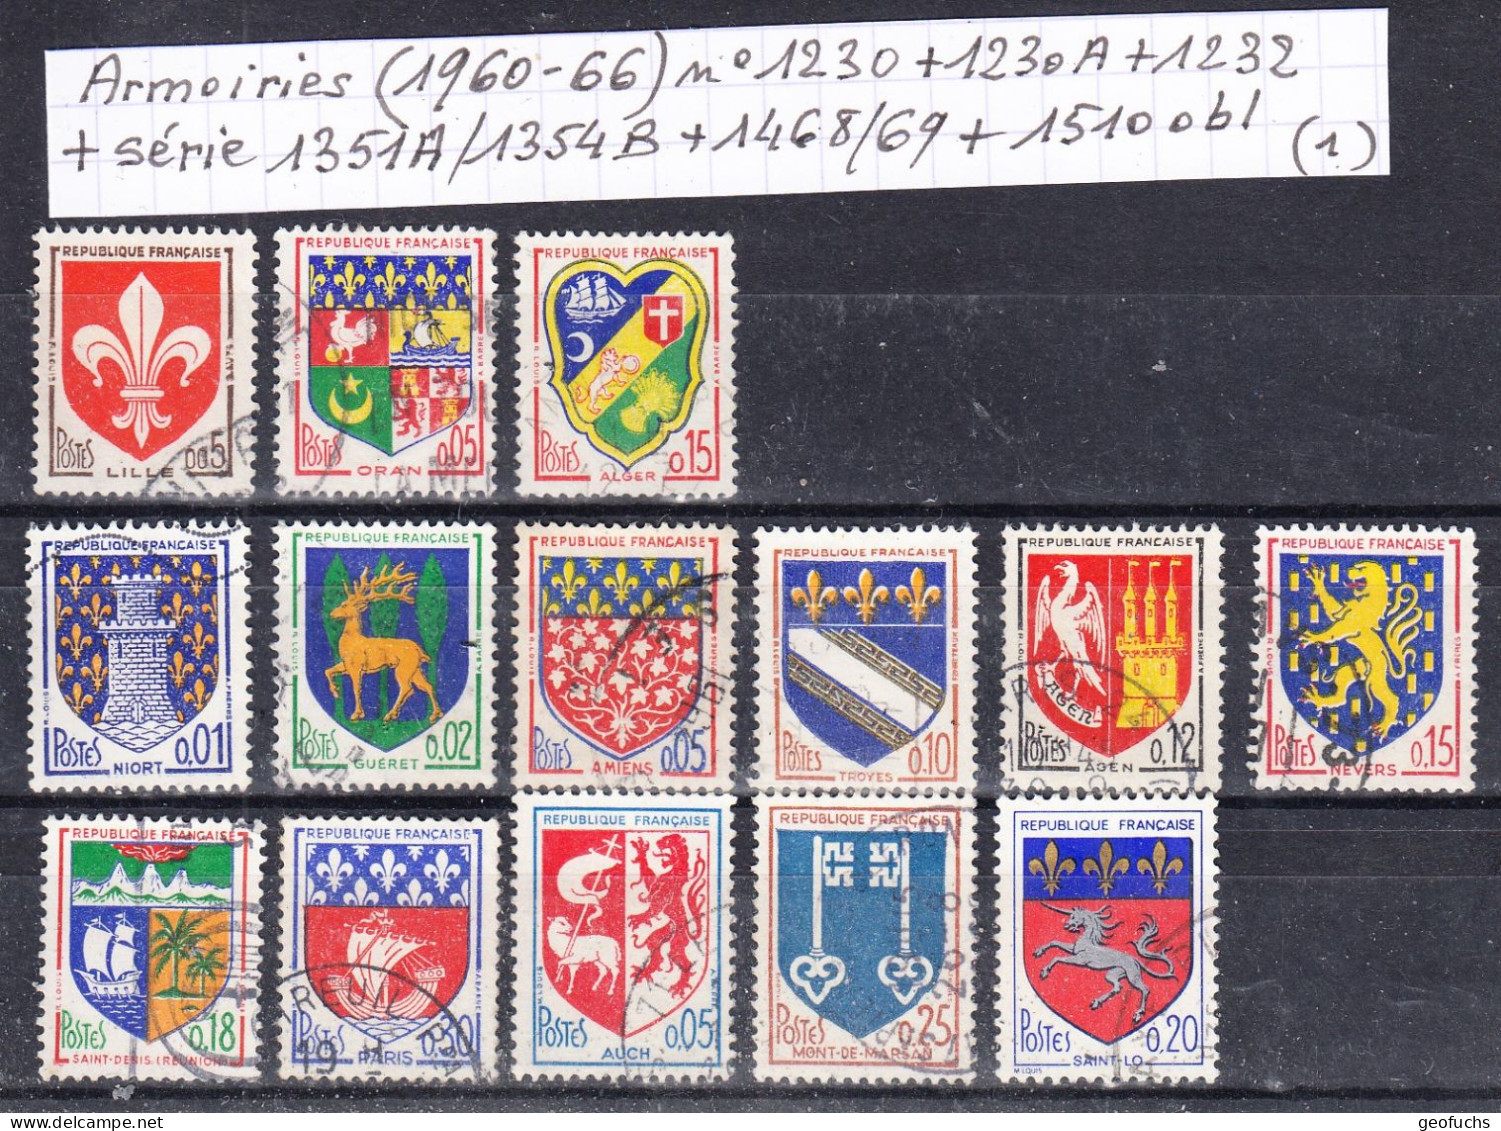 France Armoiries (1960-66) Y/T N° 1230/30A + 1232 + Série 1351A/1354B + 1468/69 + 1510 Oblitérés (lot 1) - 1941-66 Wappen